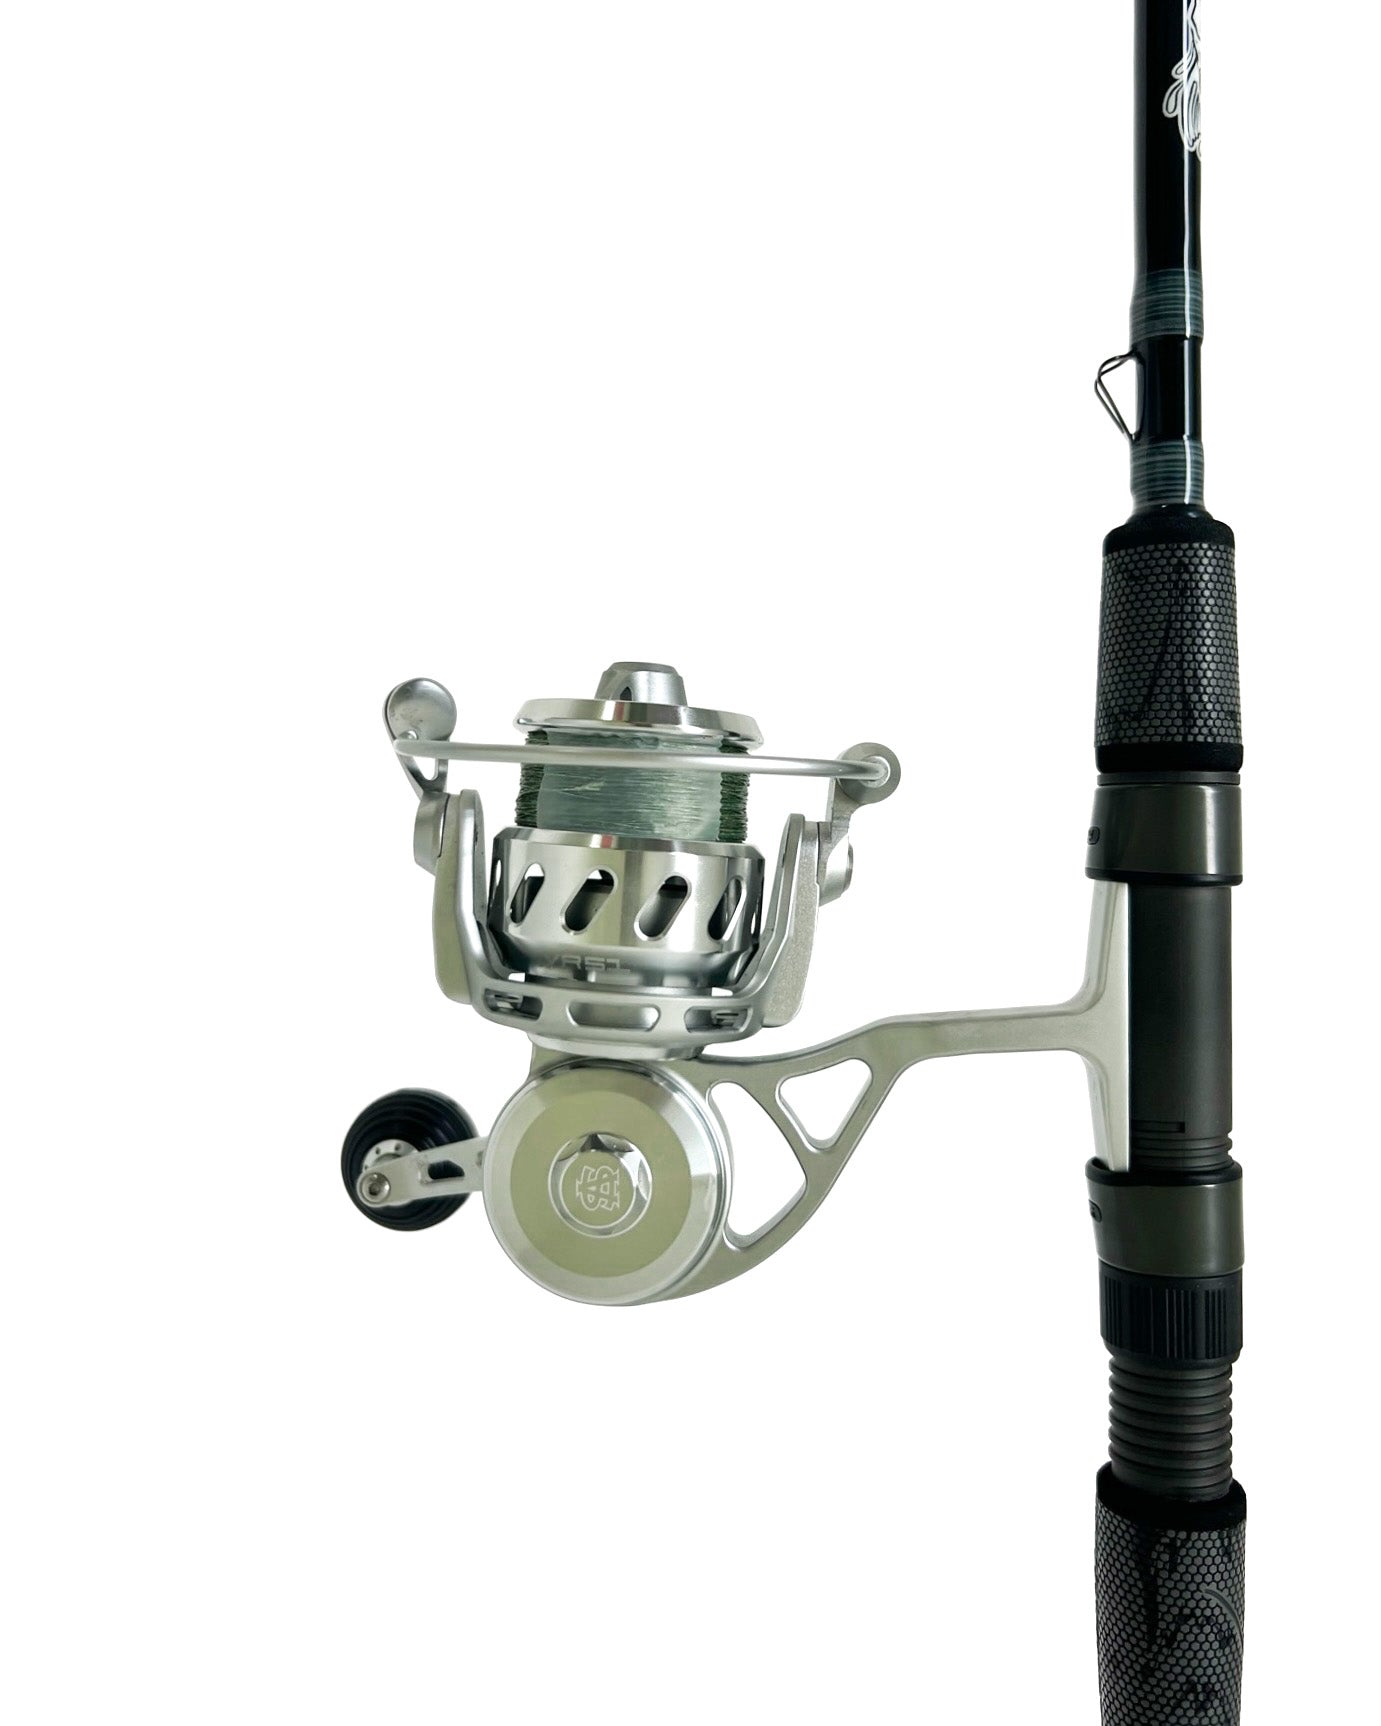 Reddrum Medium Inshore Fishing Rod 7'6”